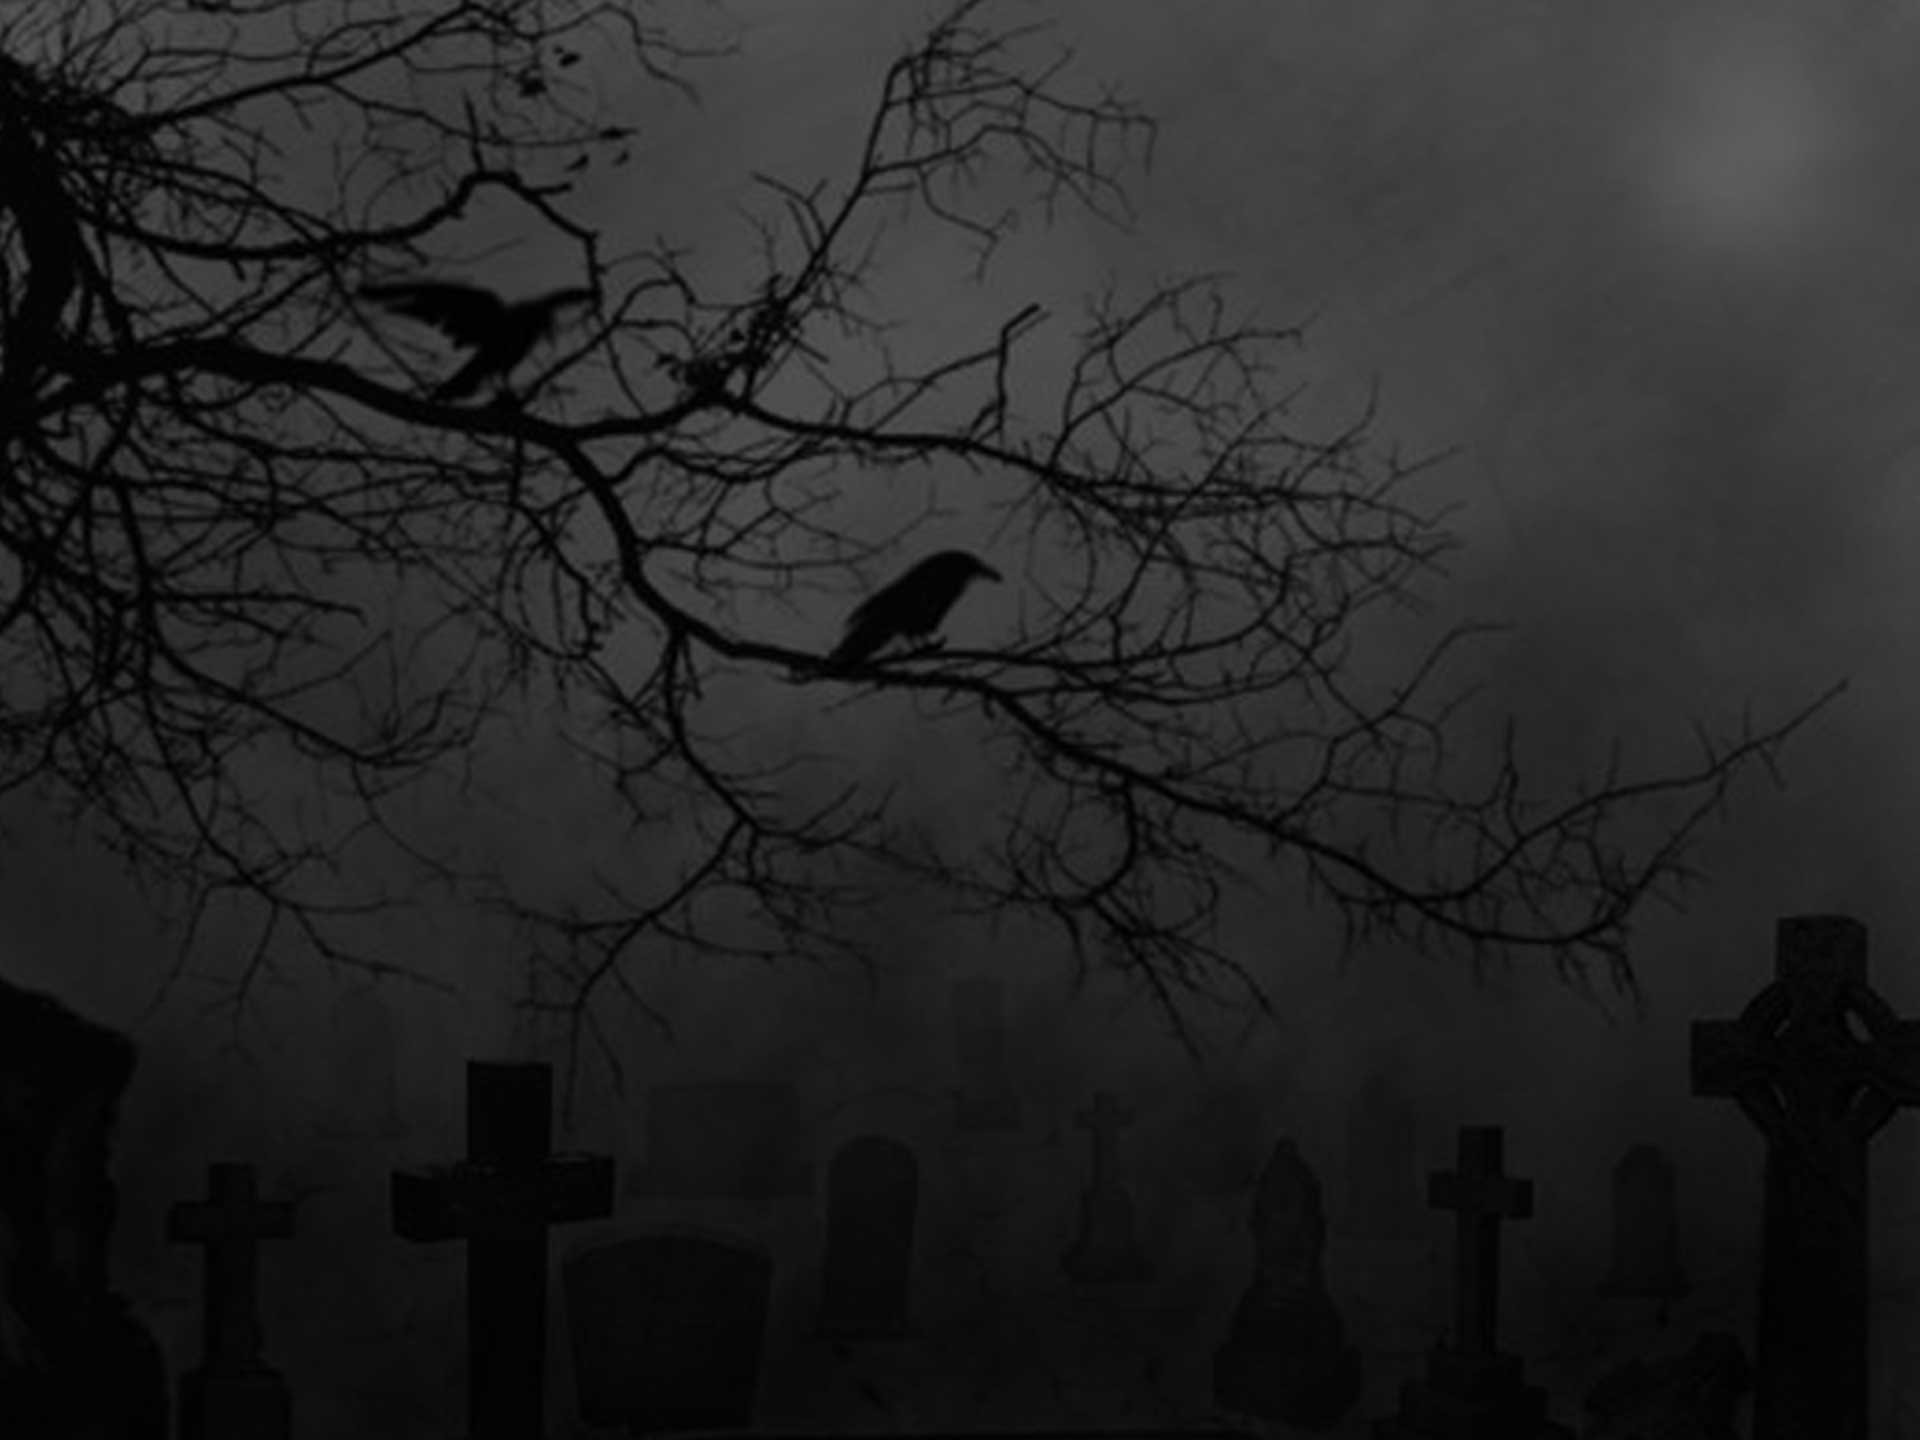 graveyard scene